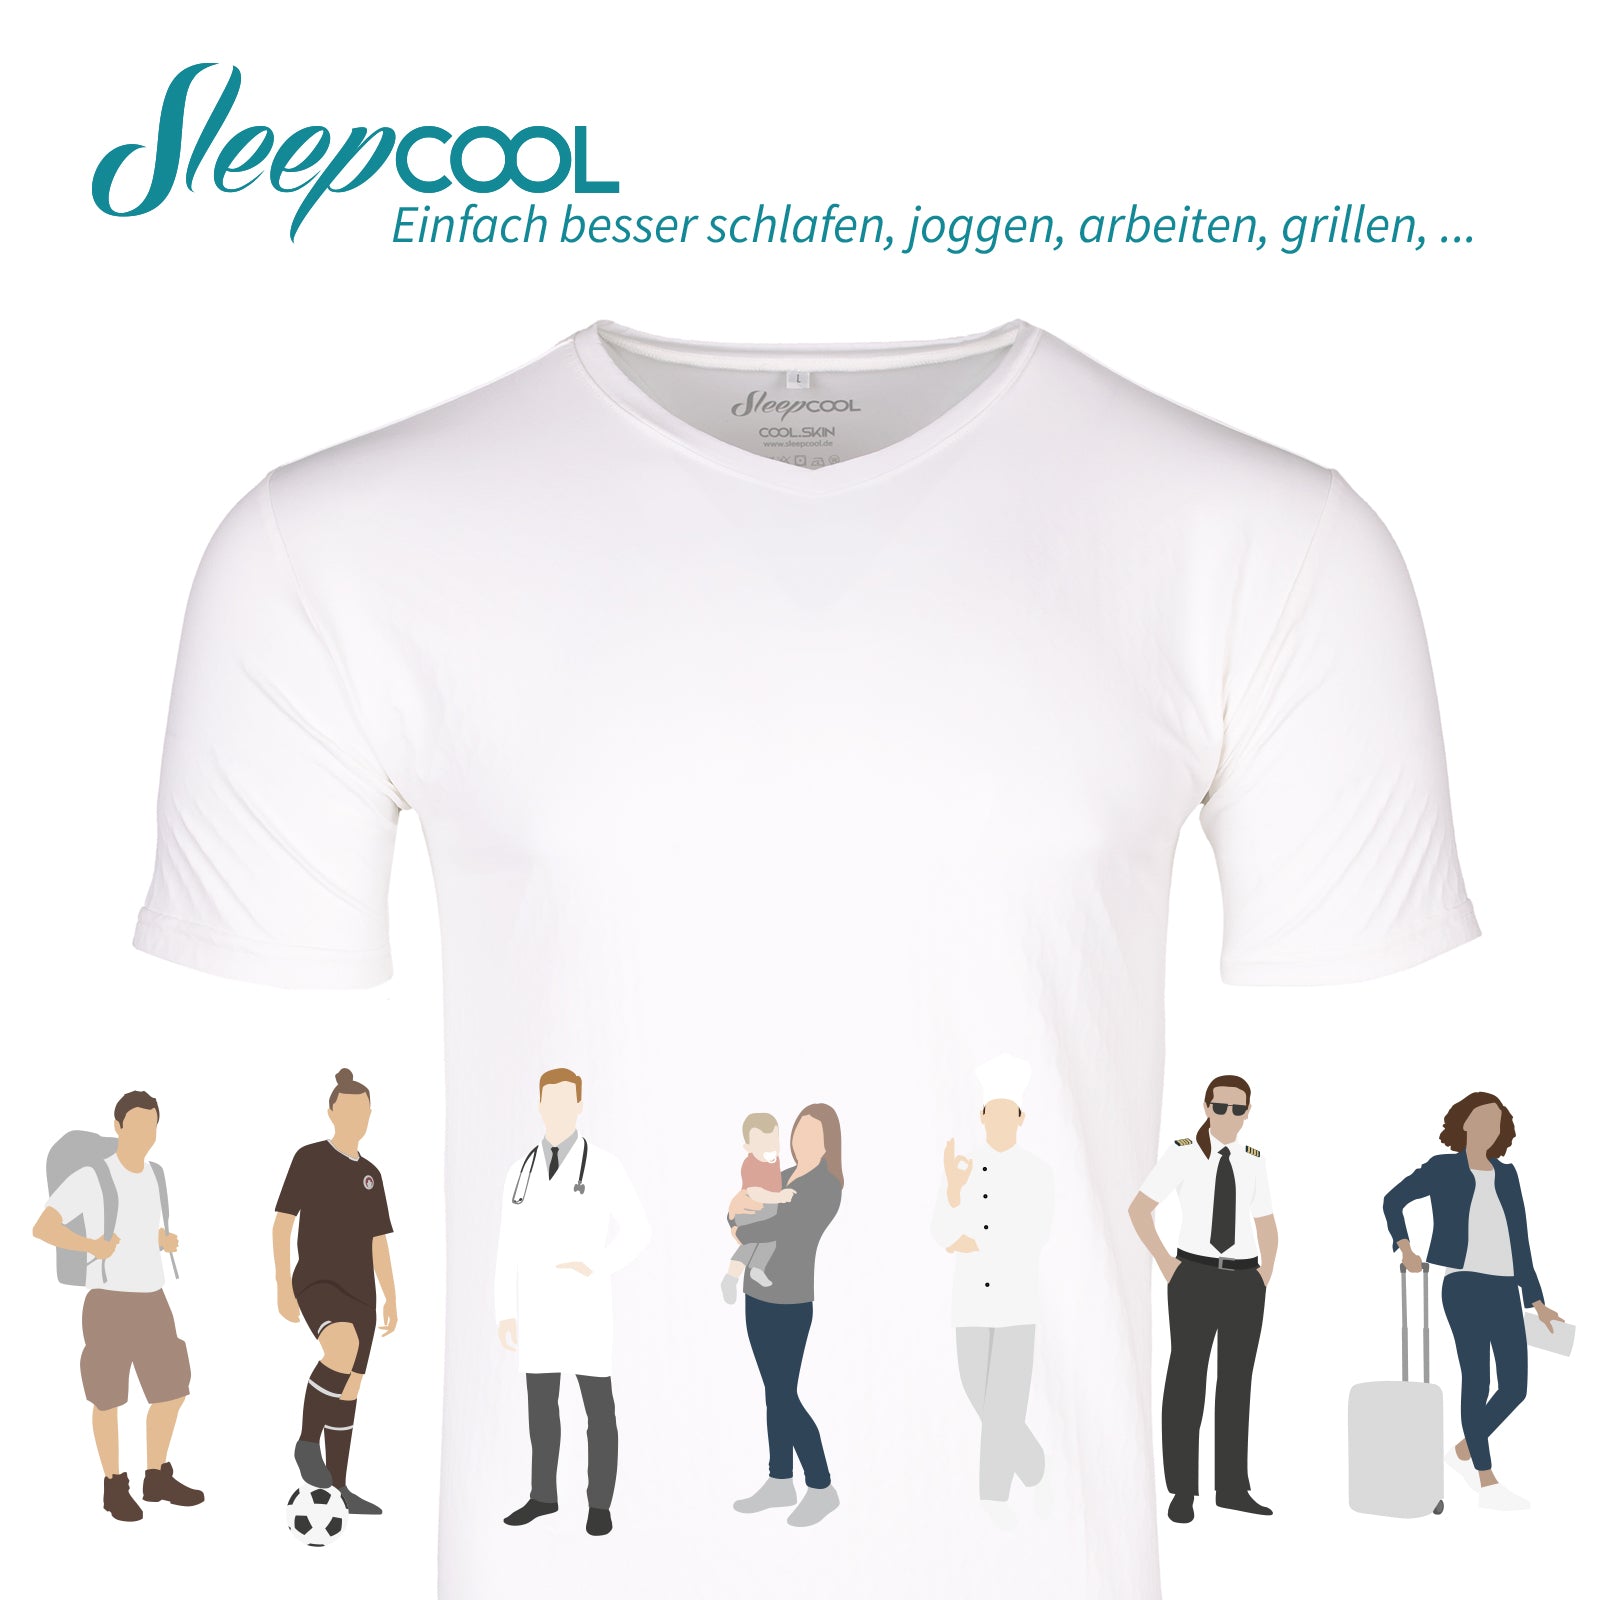 Herren Shirt COOL.SKIN - Funktionshirt mit Kühleffekt, das SleepCOOL- Gefühl zum Mitnehmen